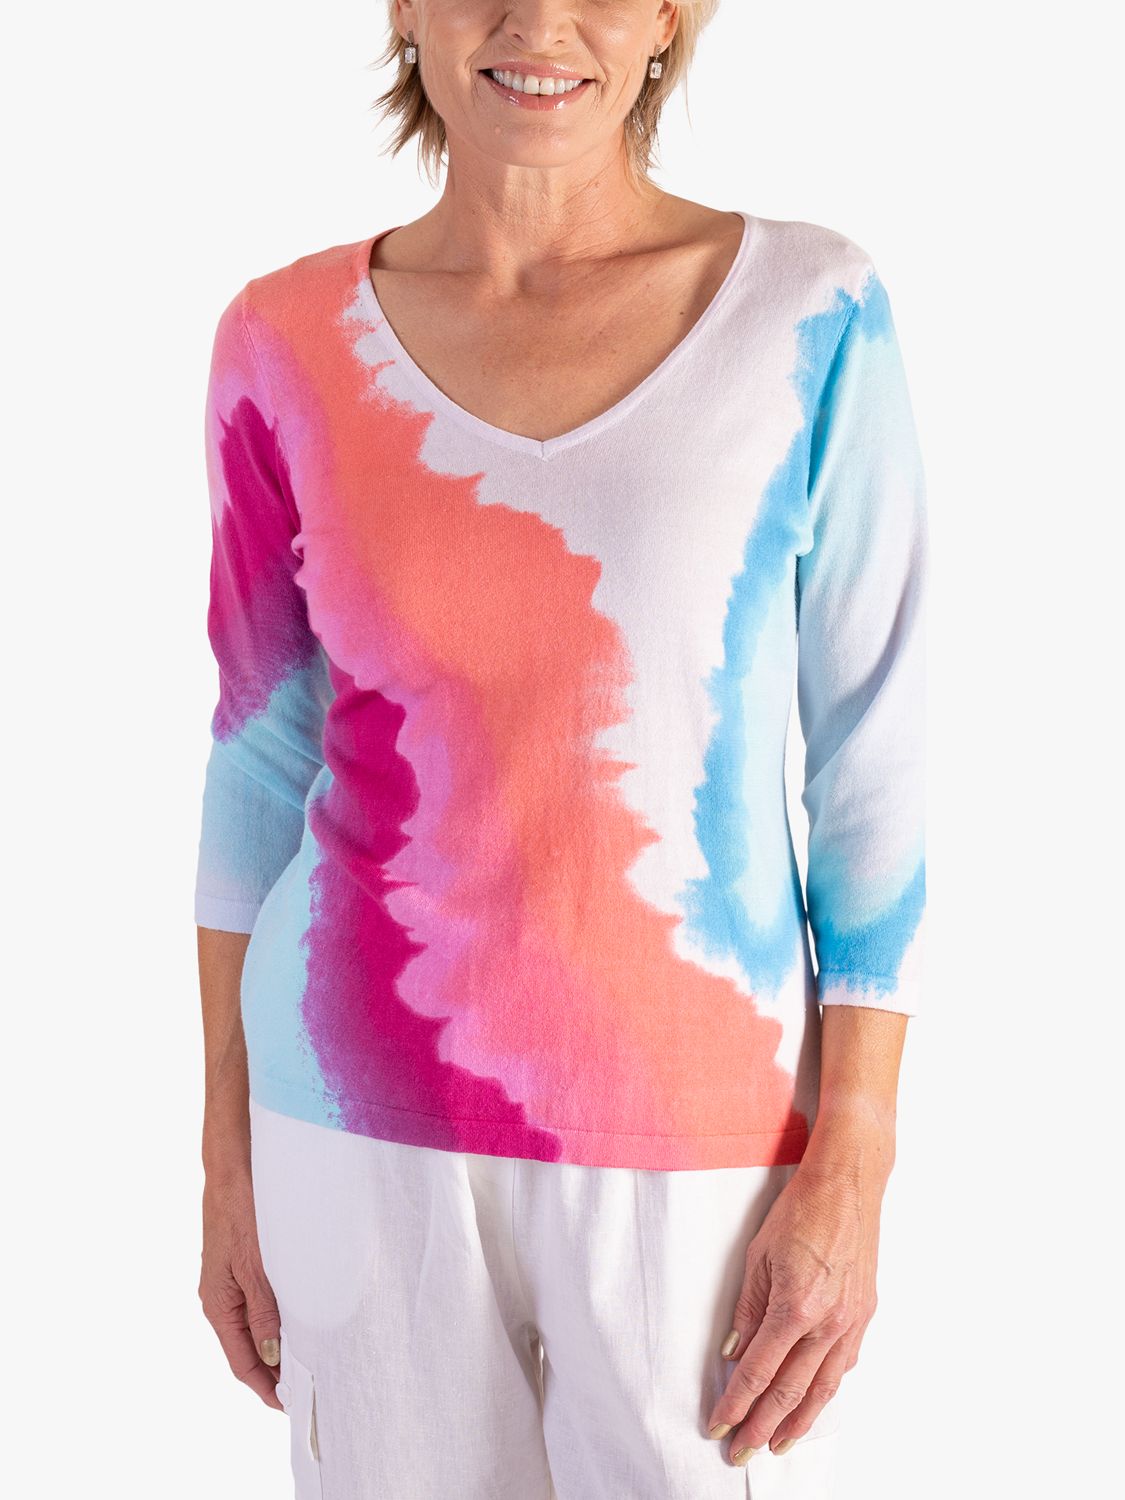 chesca Watercolour Pastels Fine Knit Jumper, White/Multi, 12-14